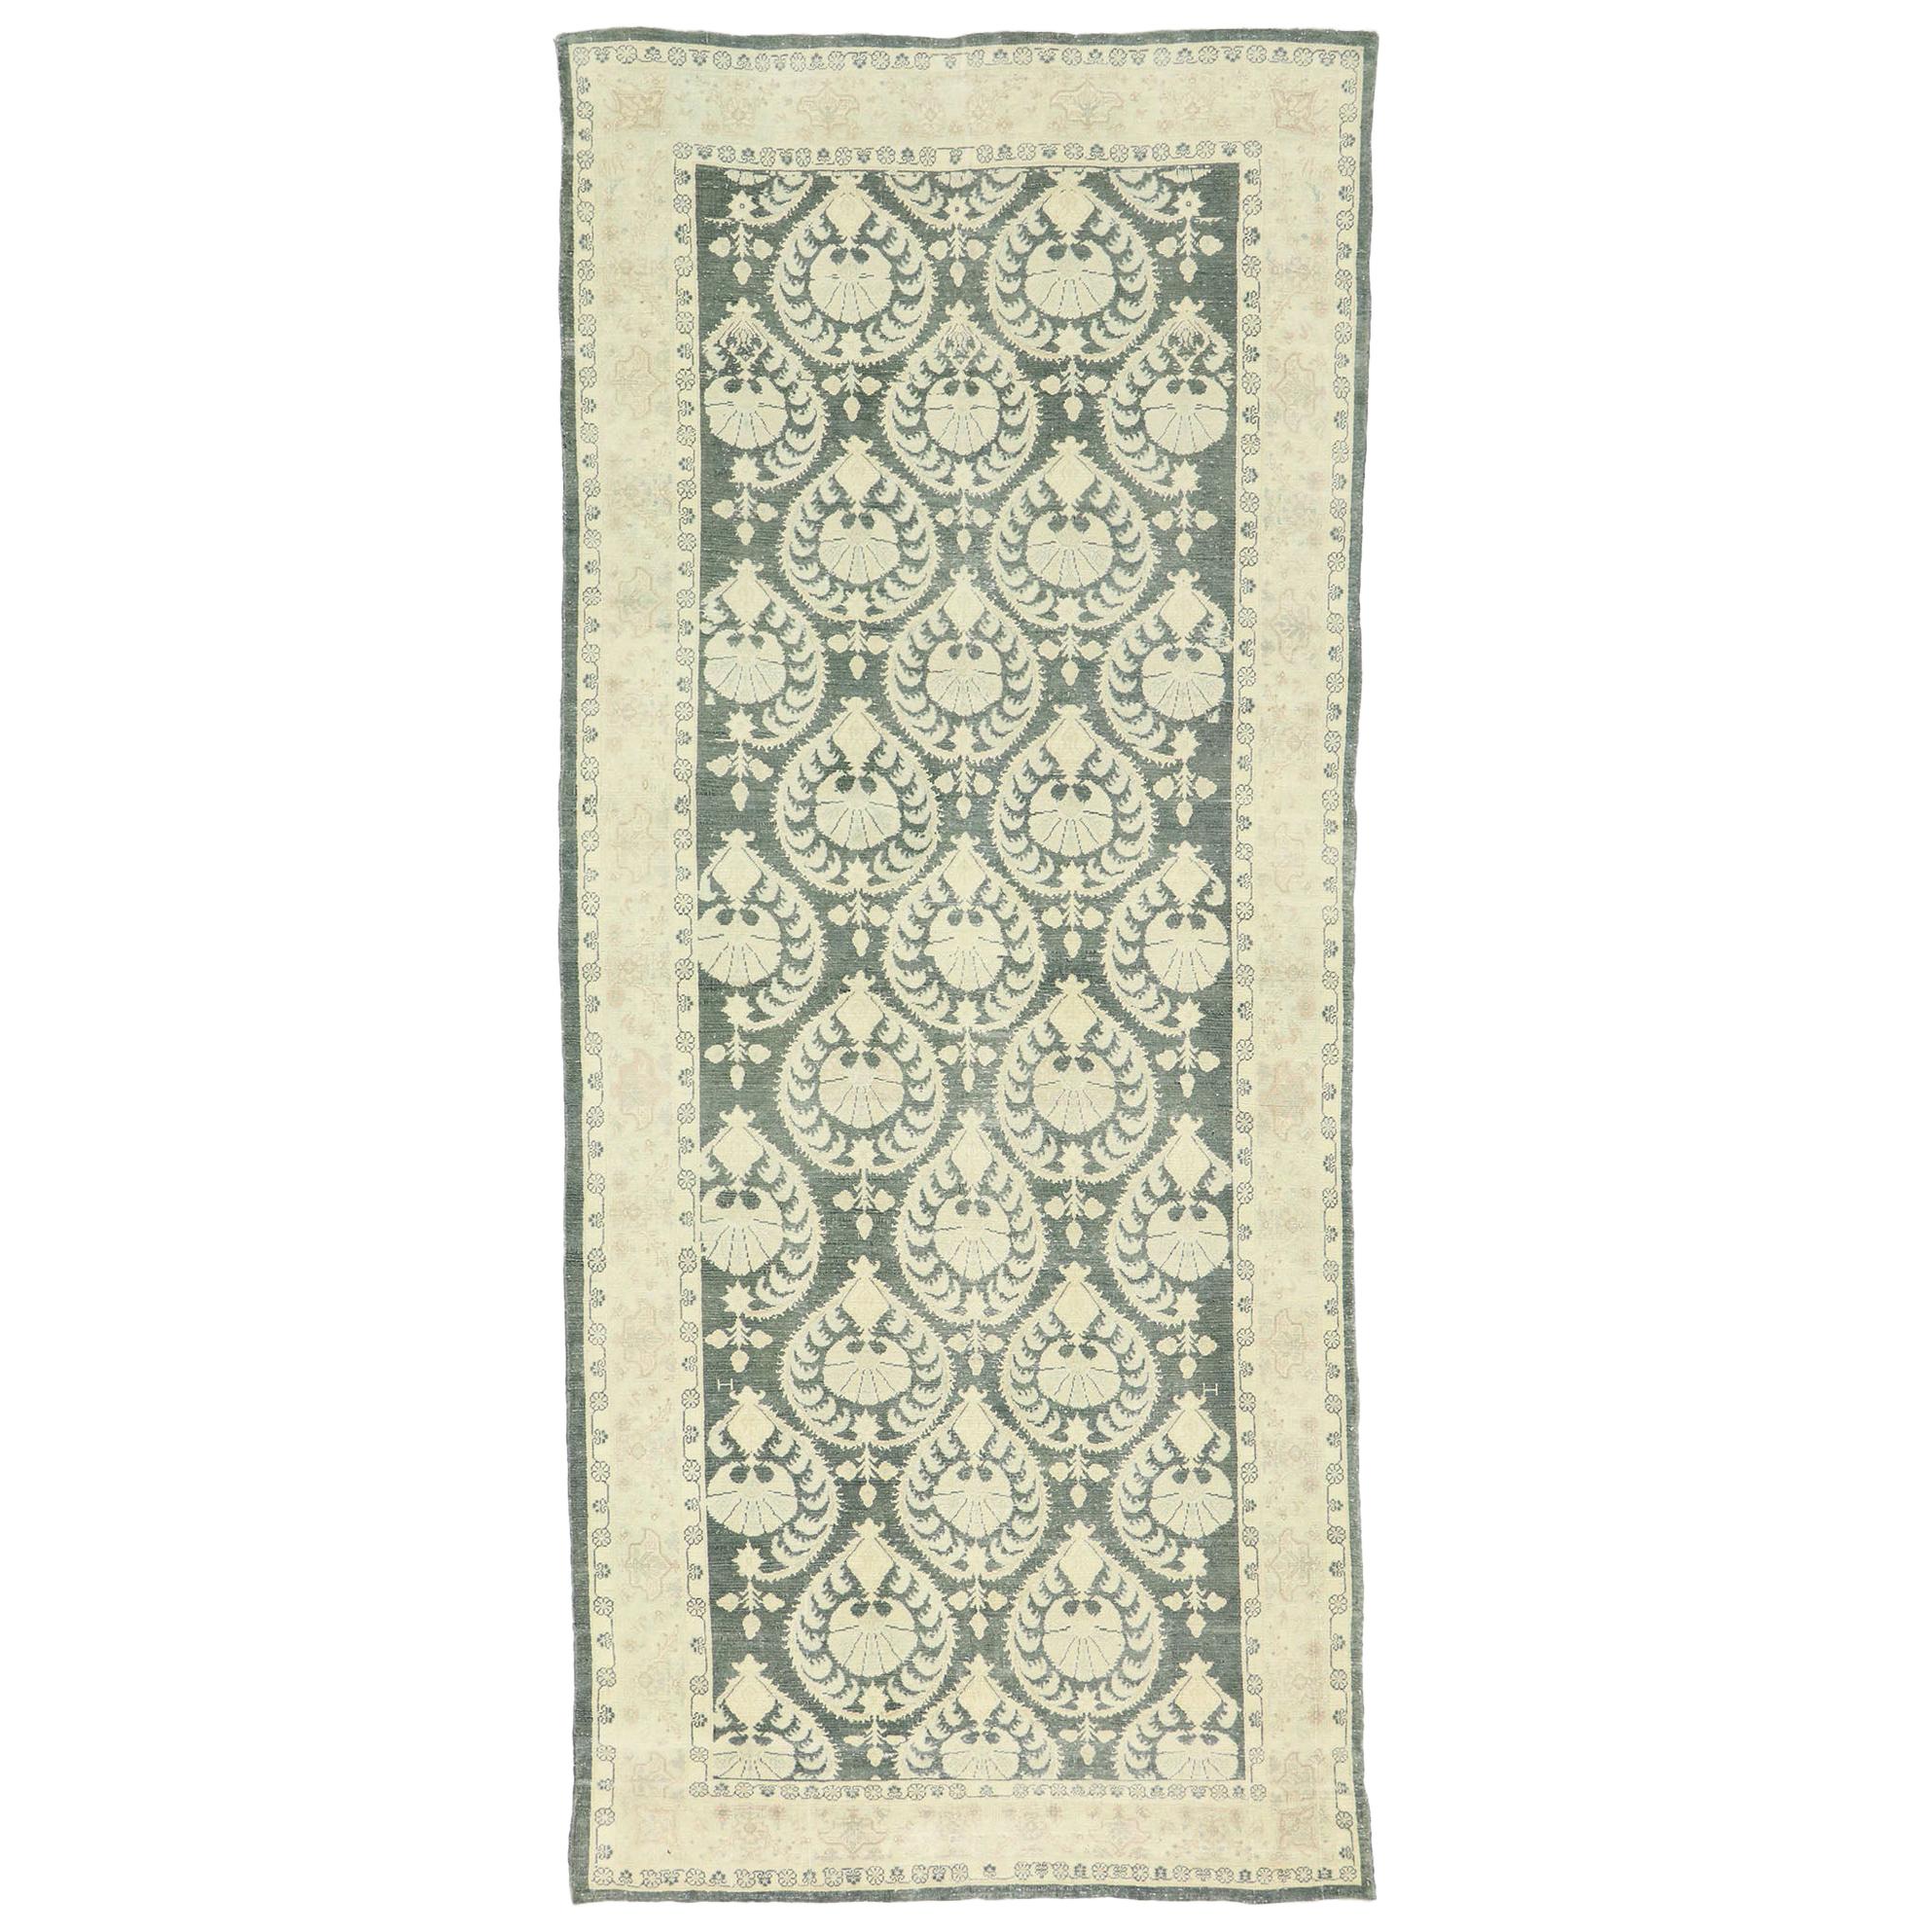 Arts & Crafts-Stil Rumänischer Vintage-Teppich im Used-Stil, inspiriert von William Morris